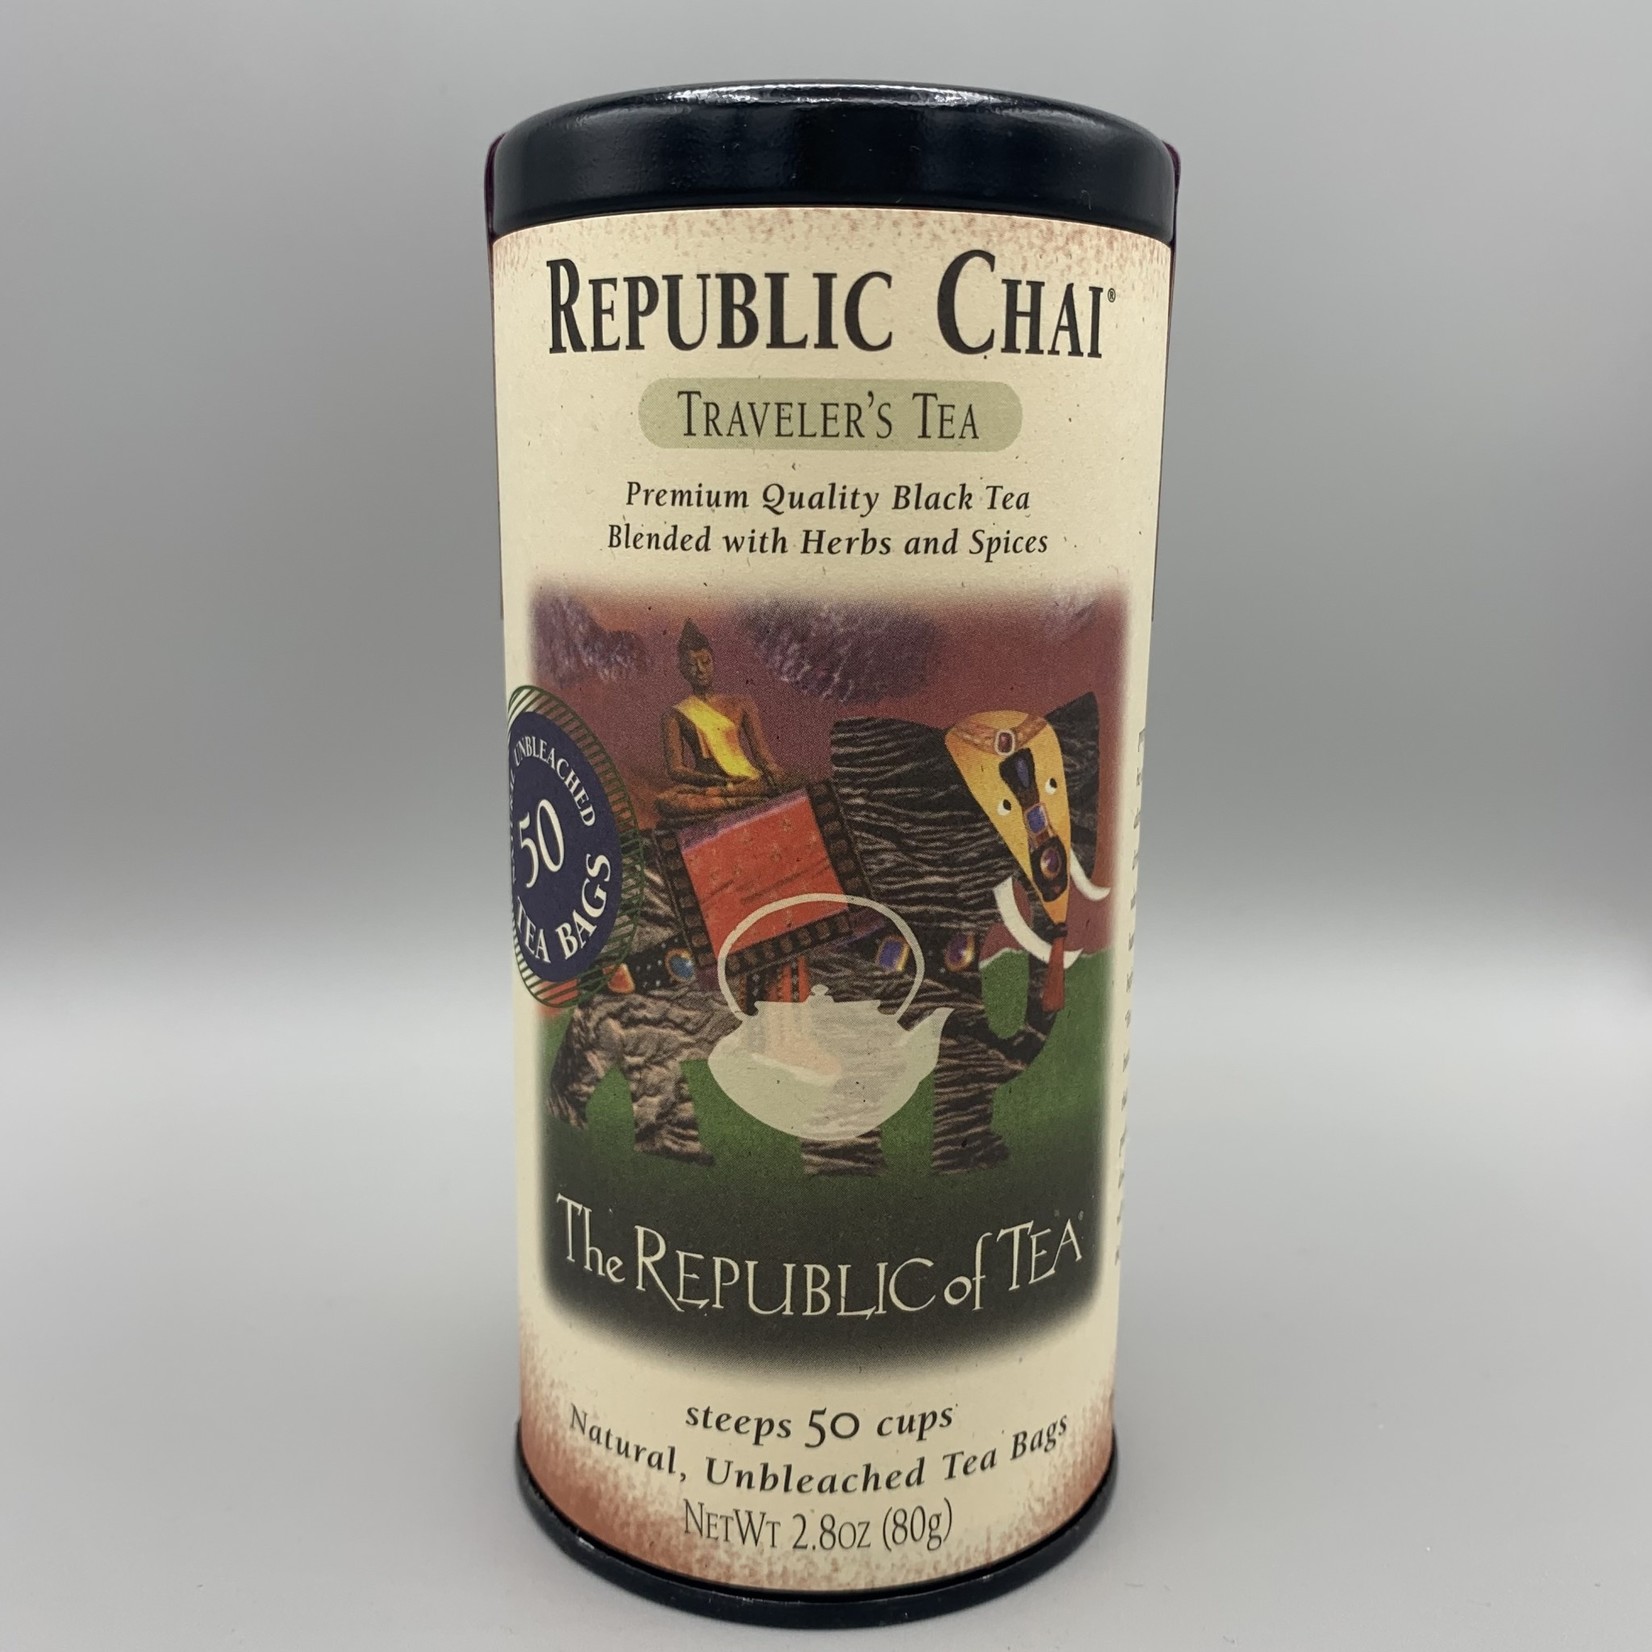 The Republic of Tea: Black Blend: Republic Chai